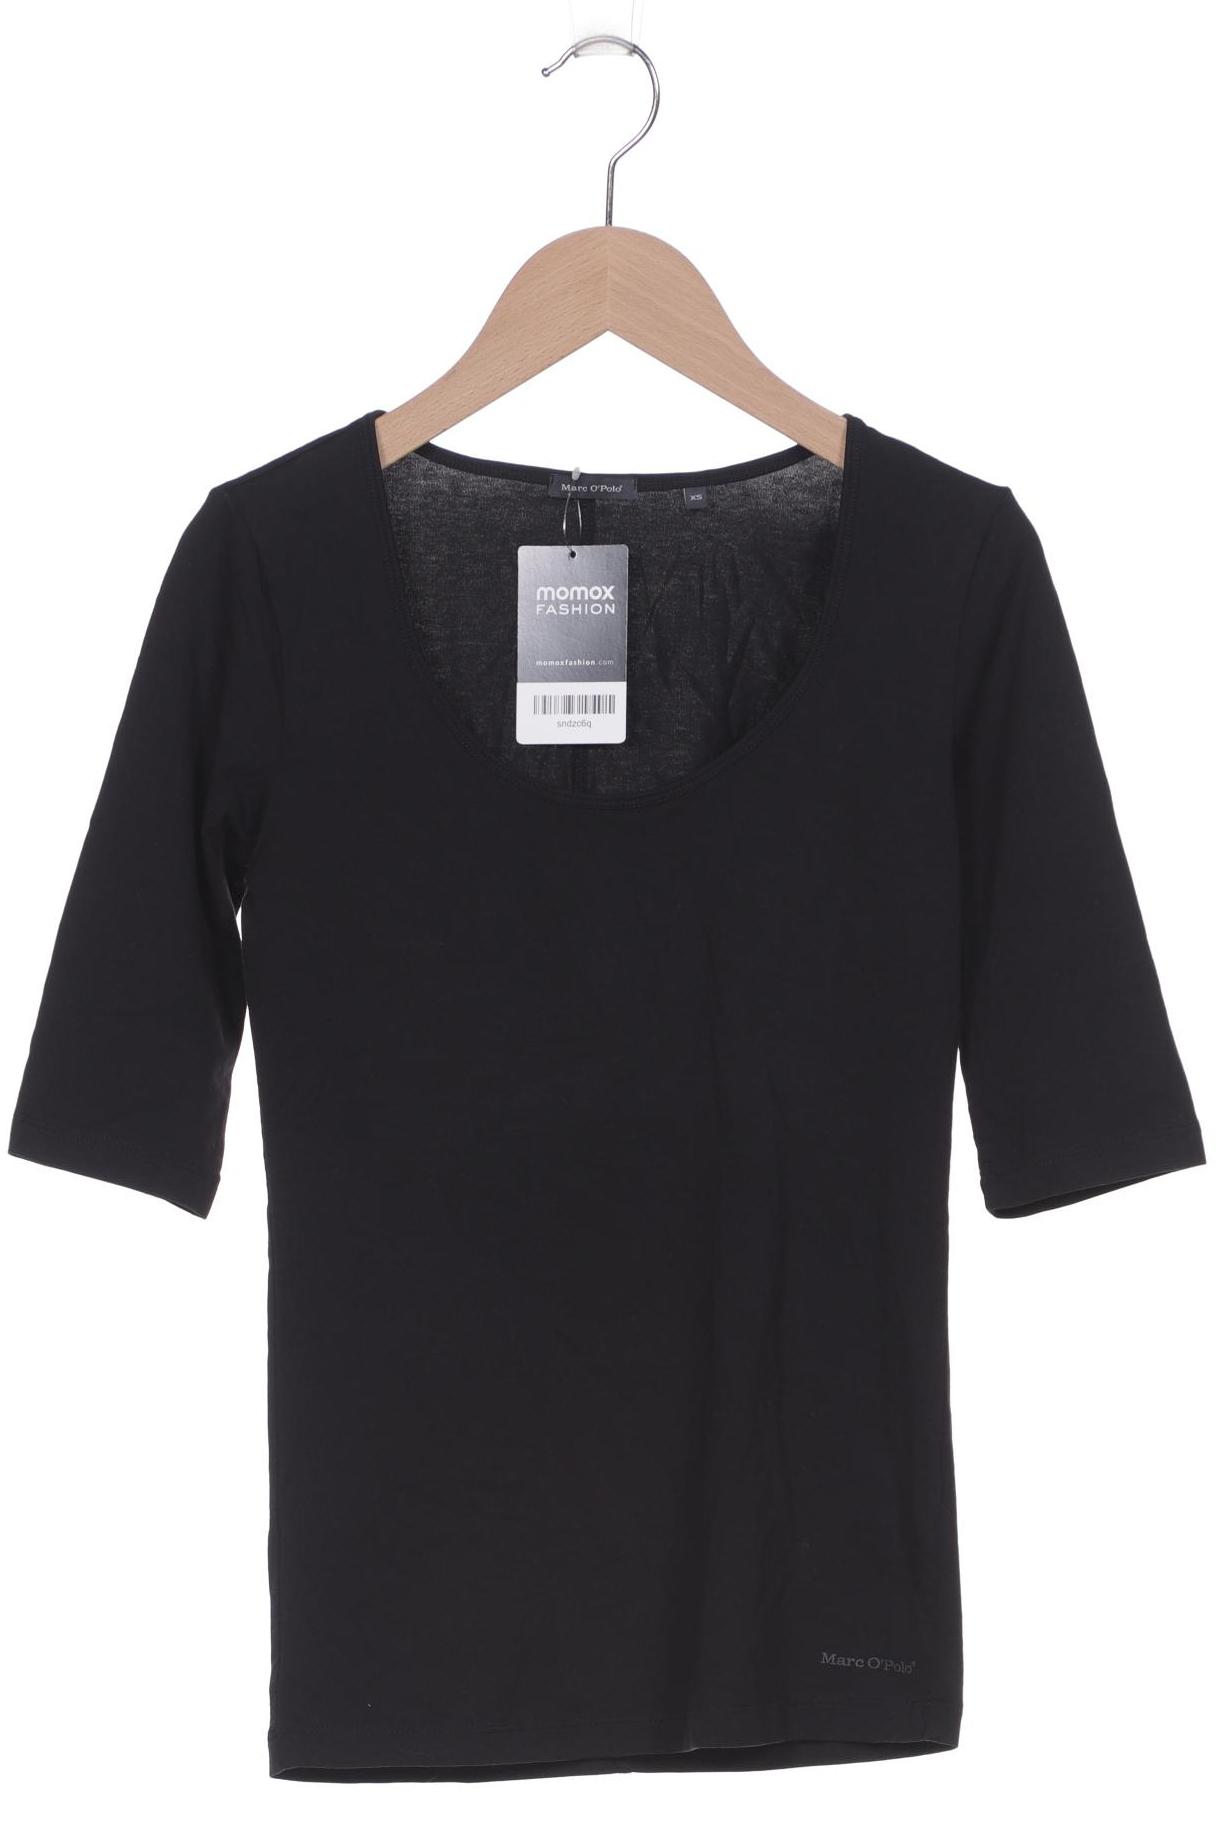 Marc O Polo Damen T-Shirt, schwarz von Marc O Polo